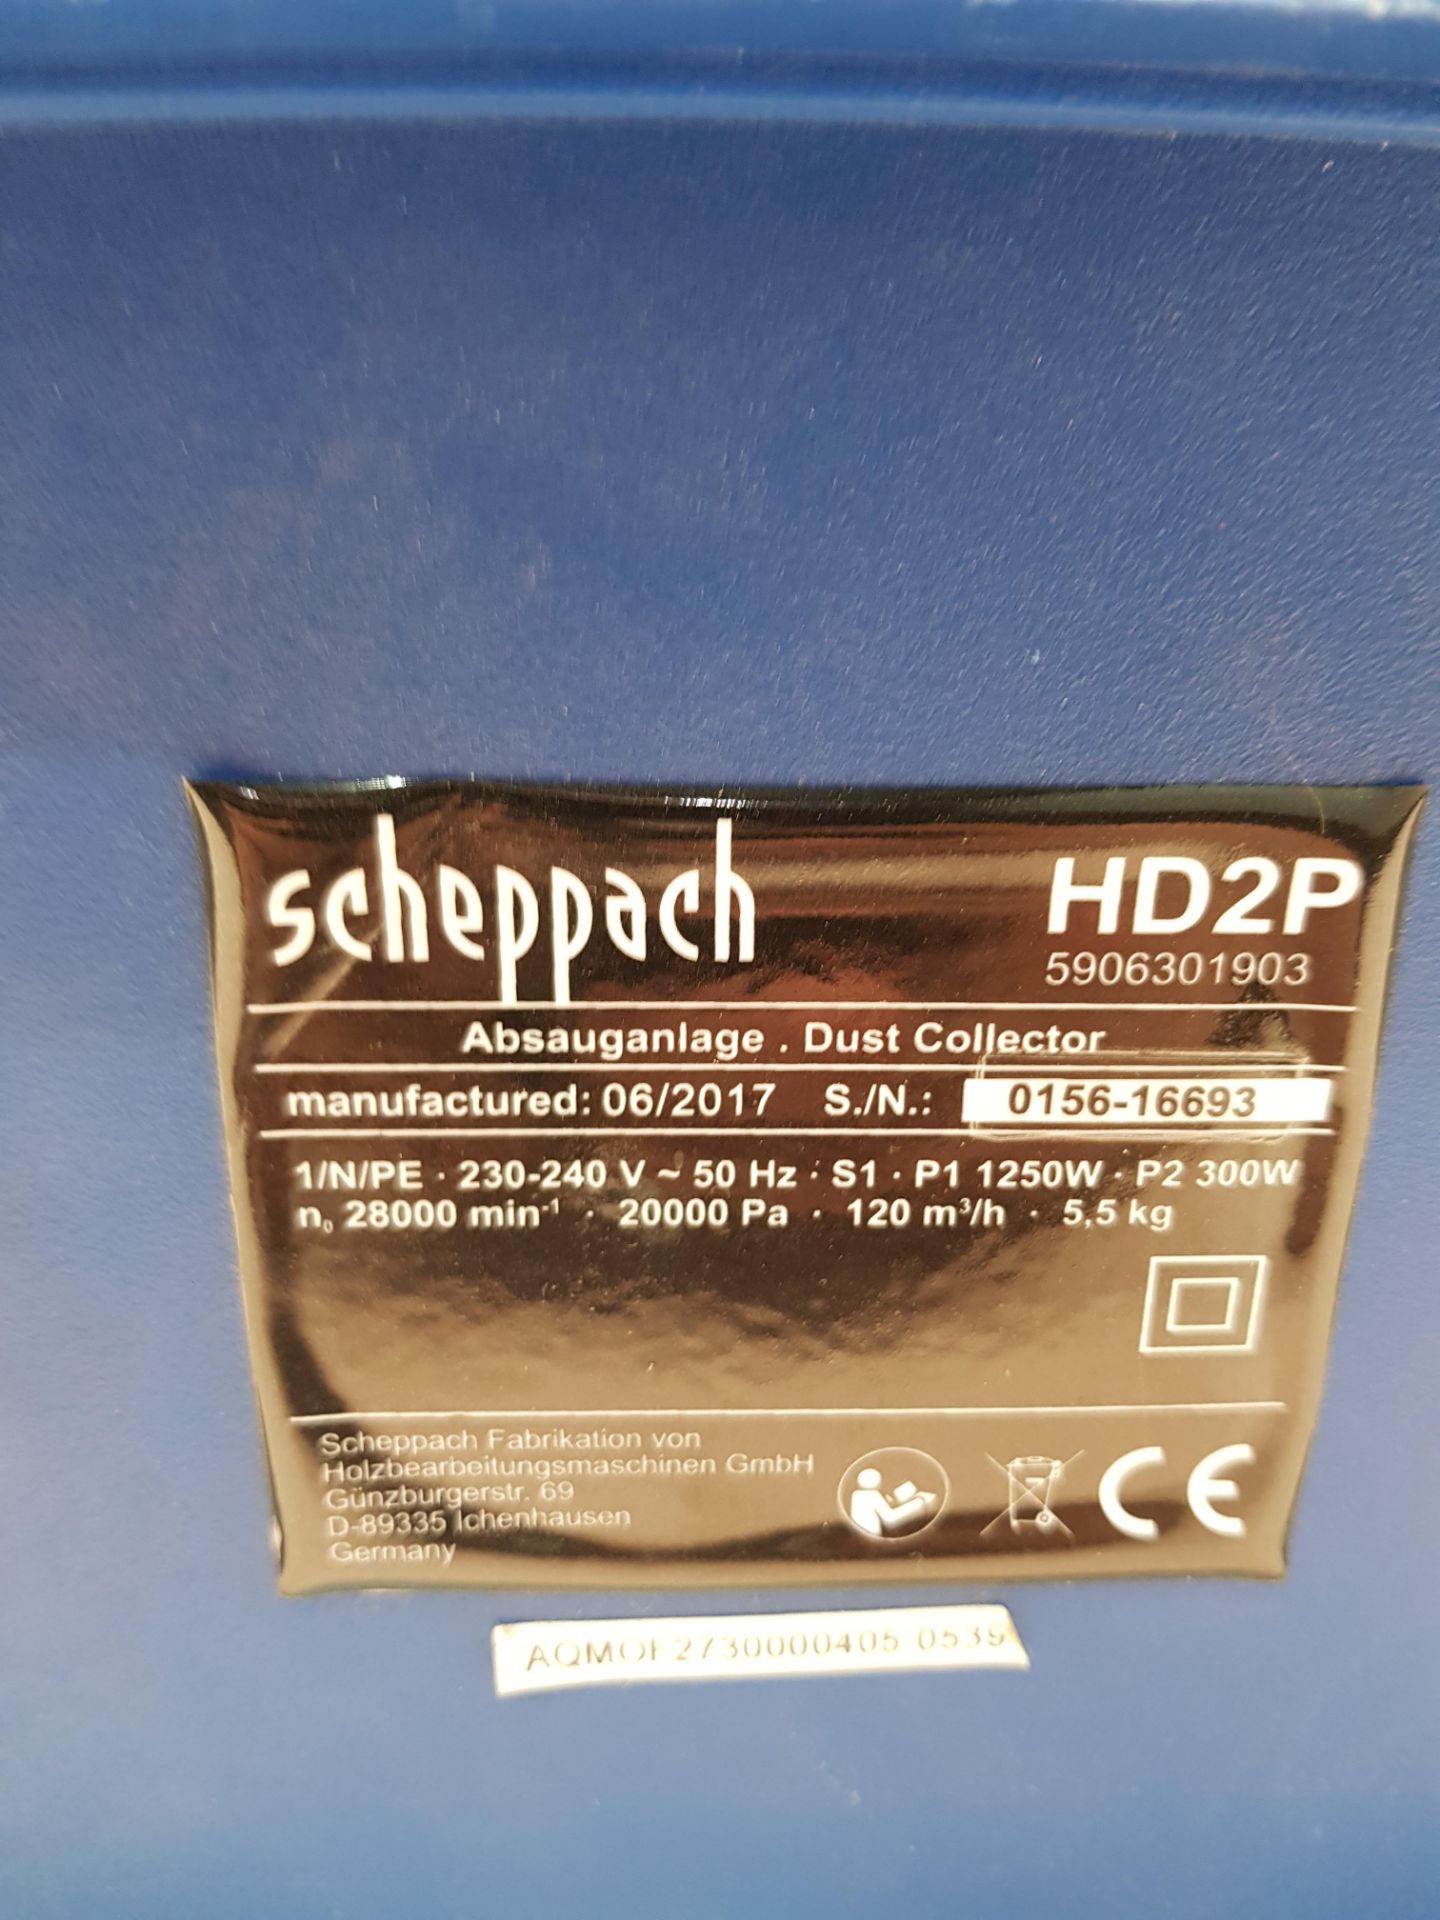 Scheppach Dust Collector S/N: 0156-16693 - Image 3 of 3